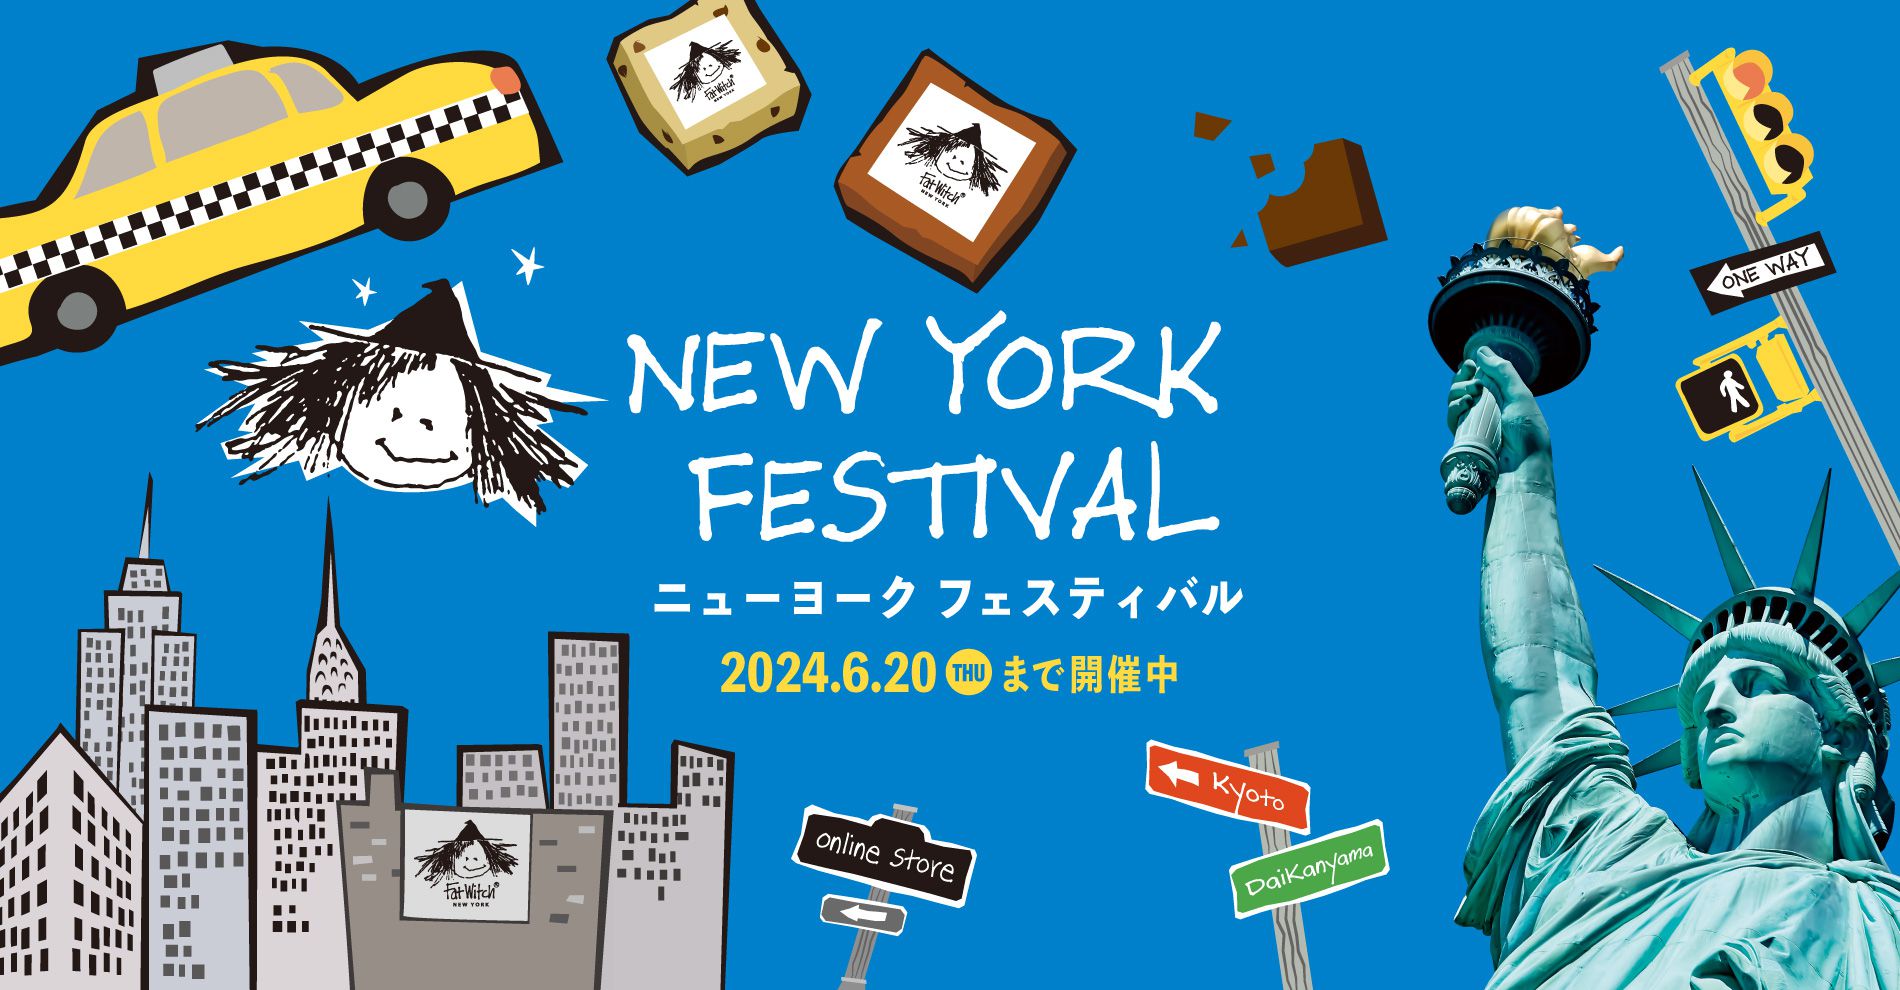 New York festival 2024